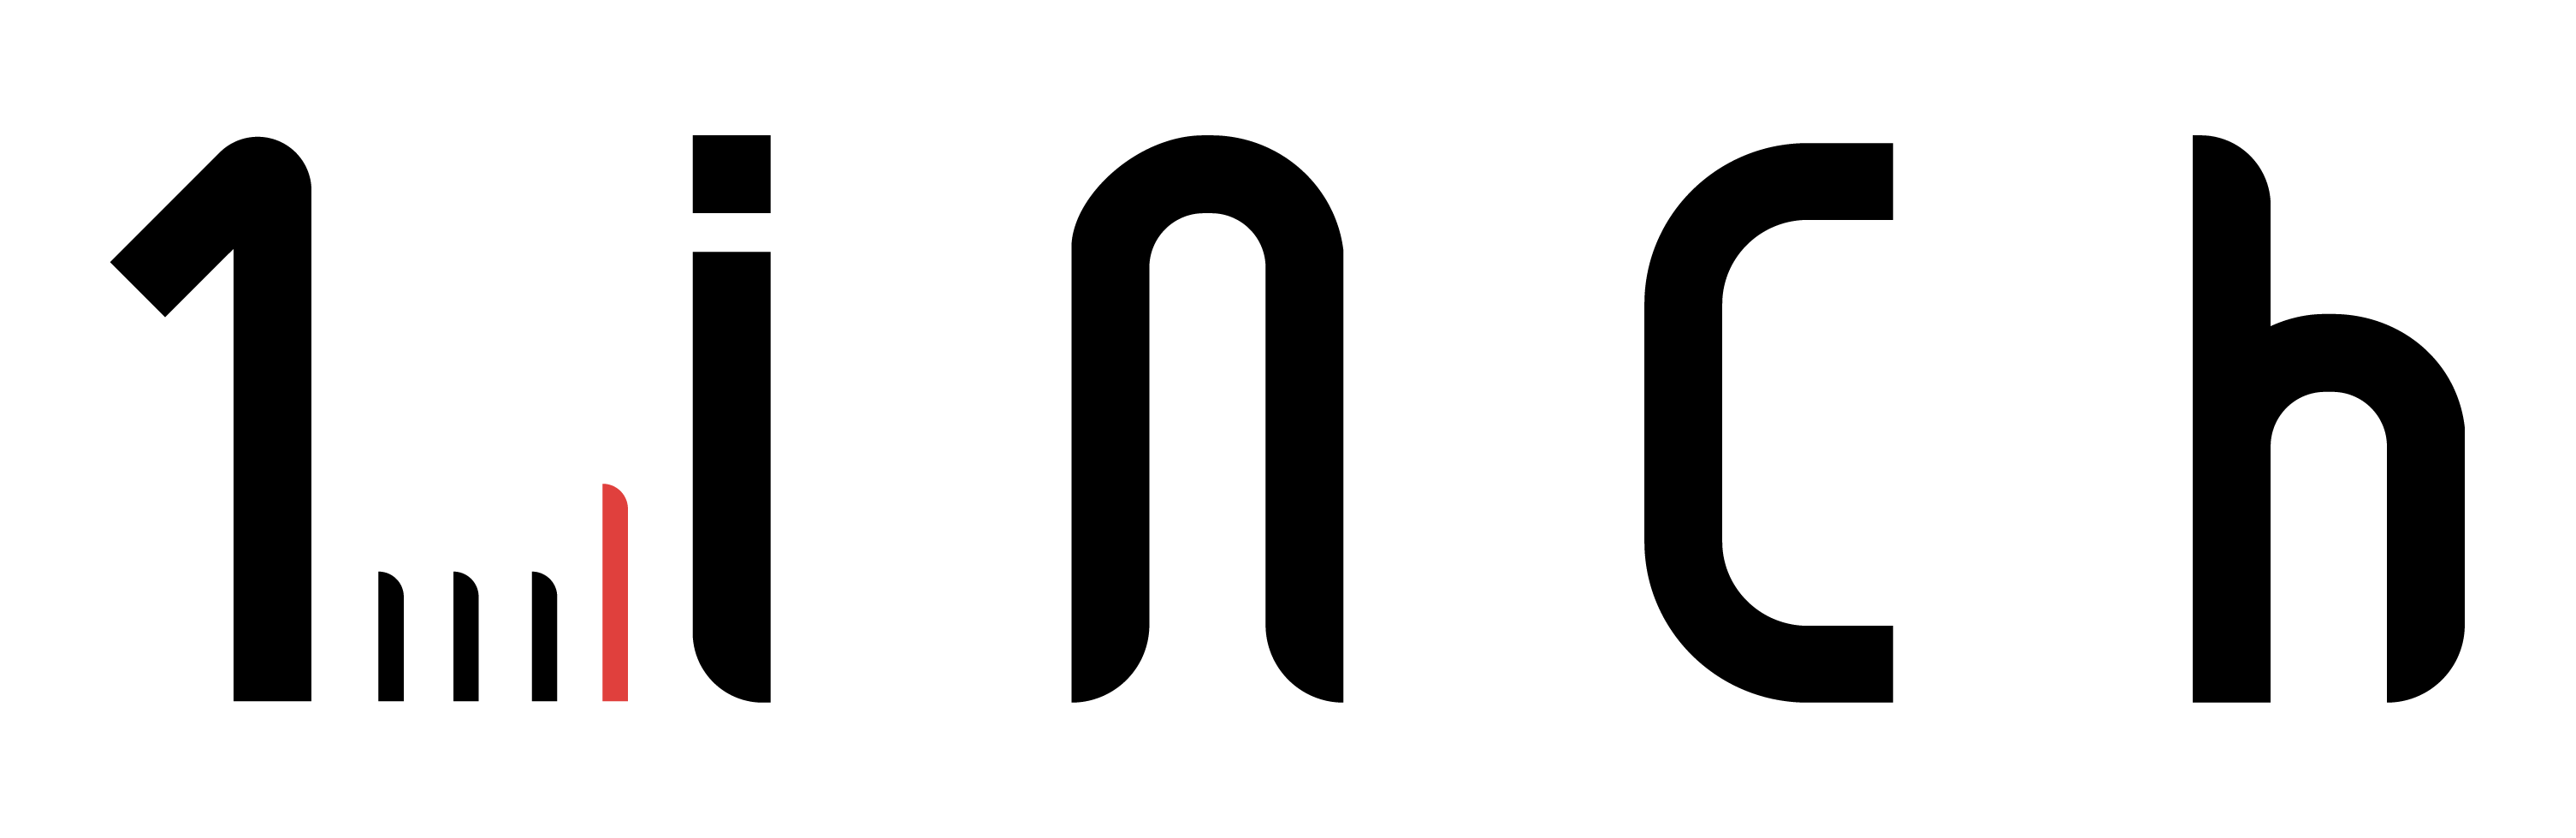 1인치/ 1inch Logo